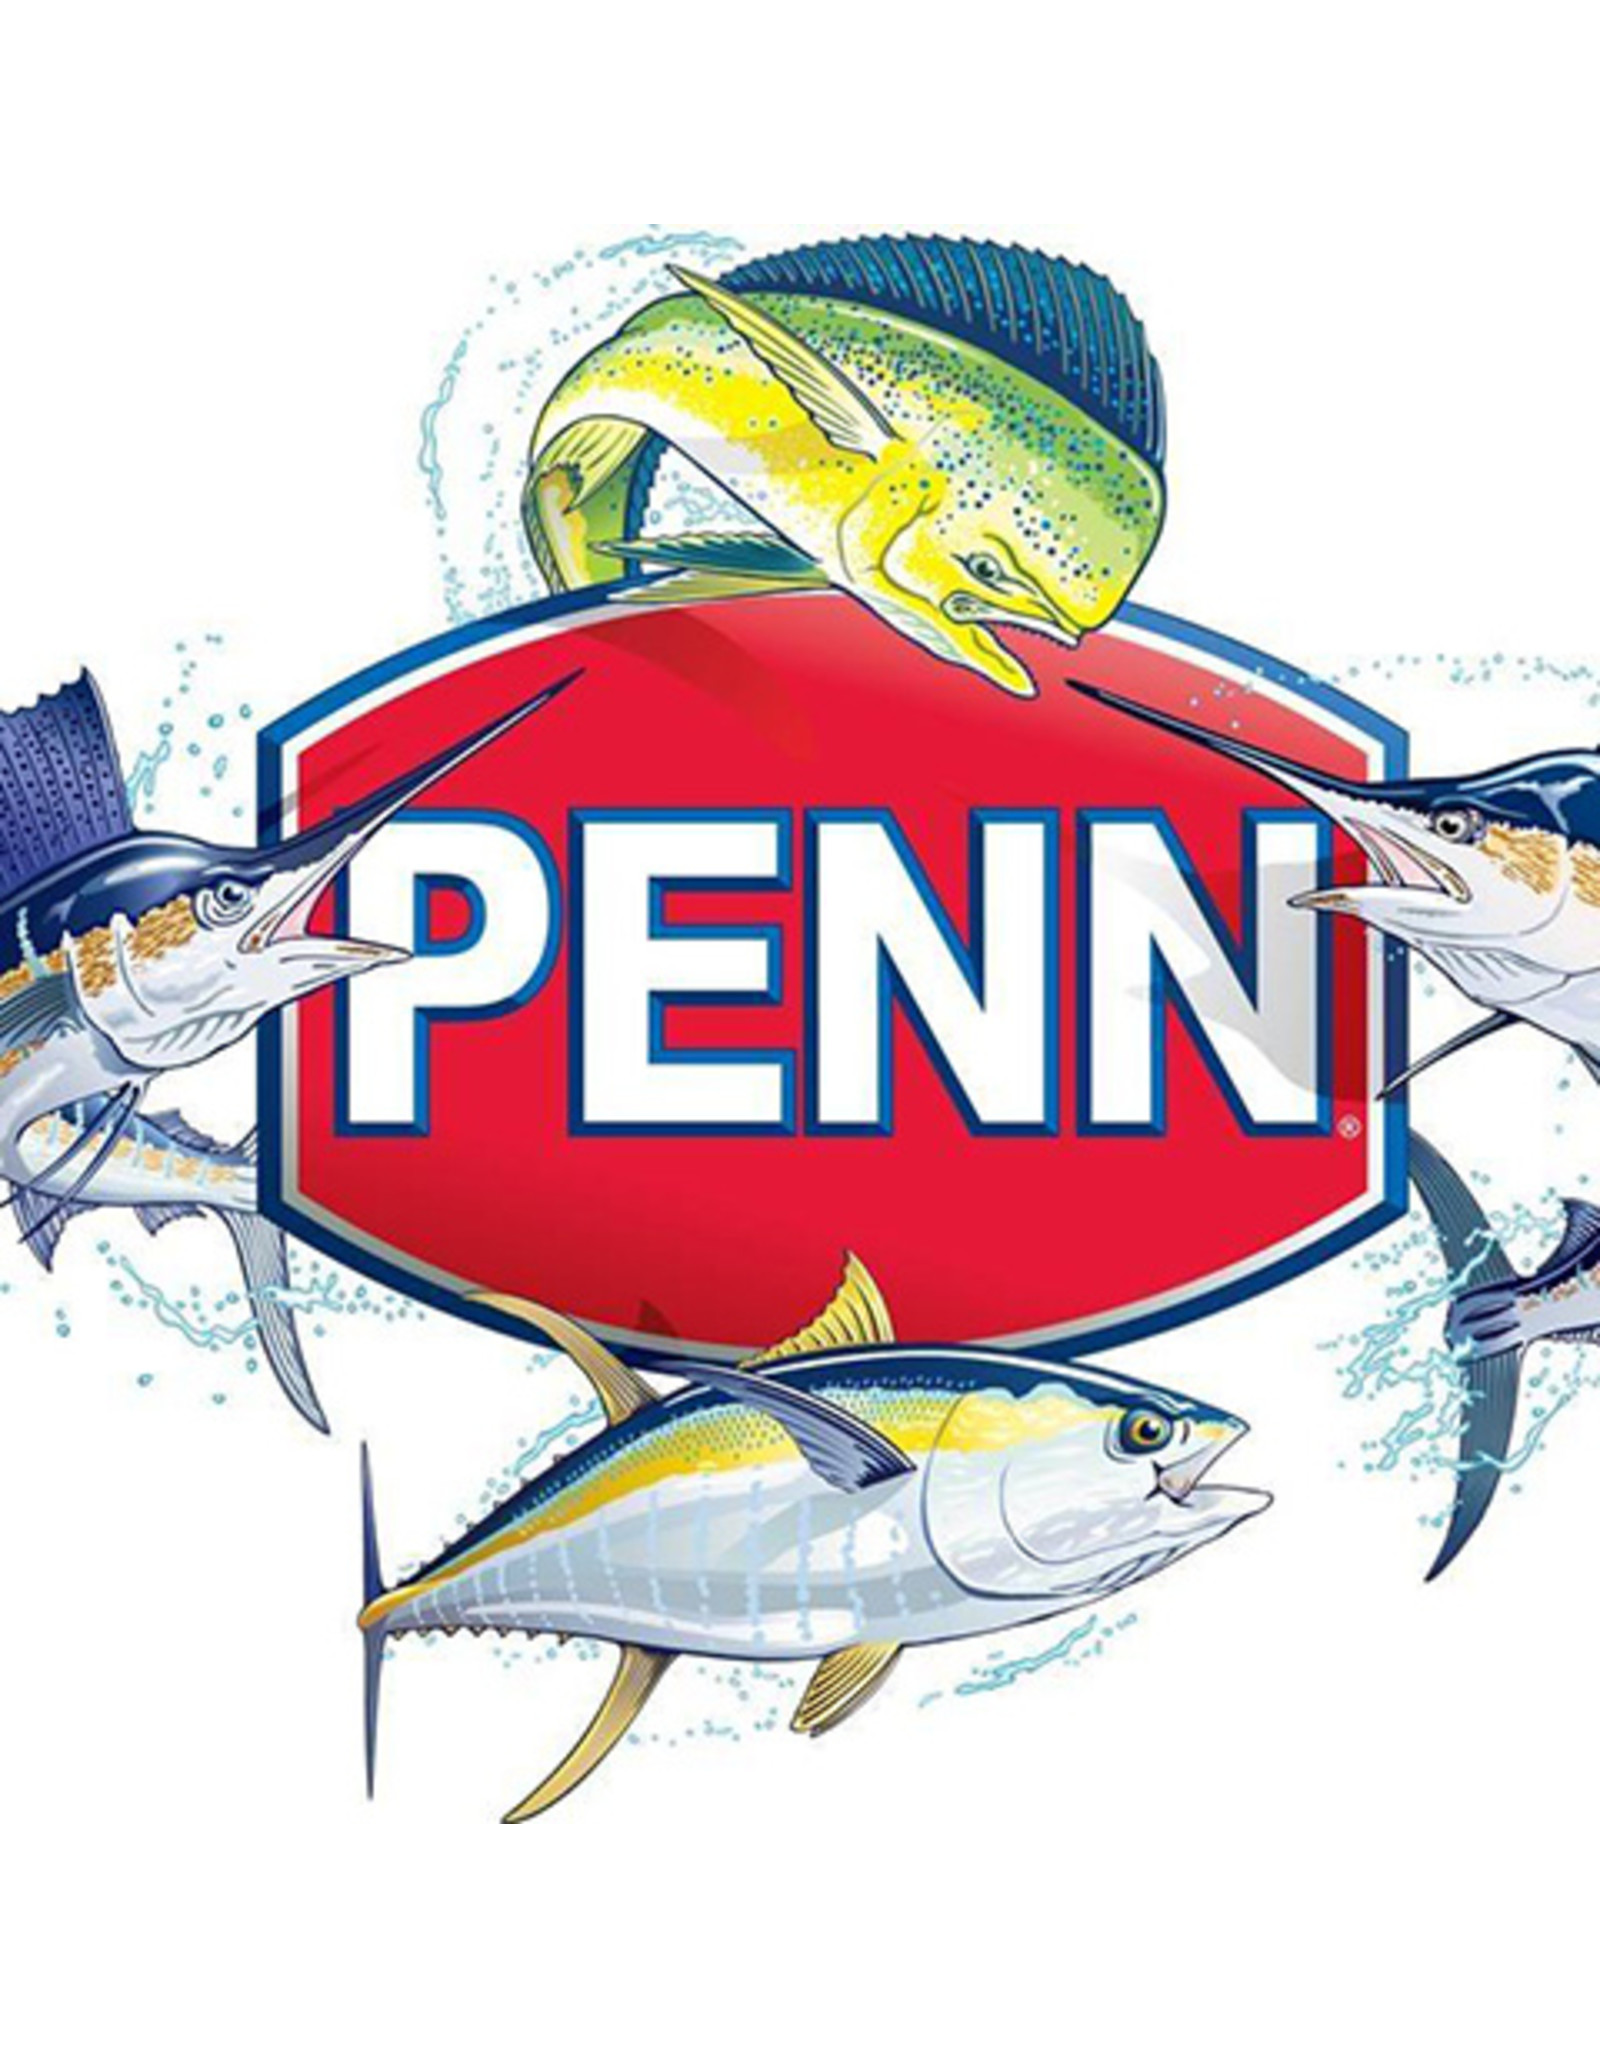 Penn 46-875  LINE GUIDE/ NLA